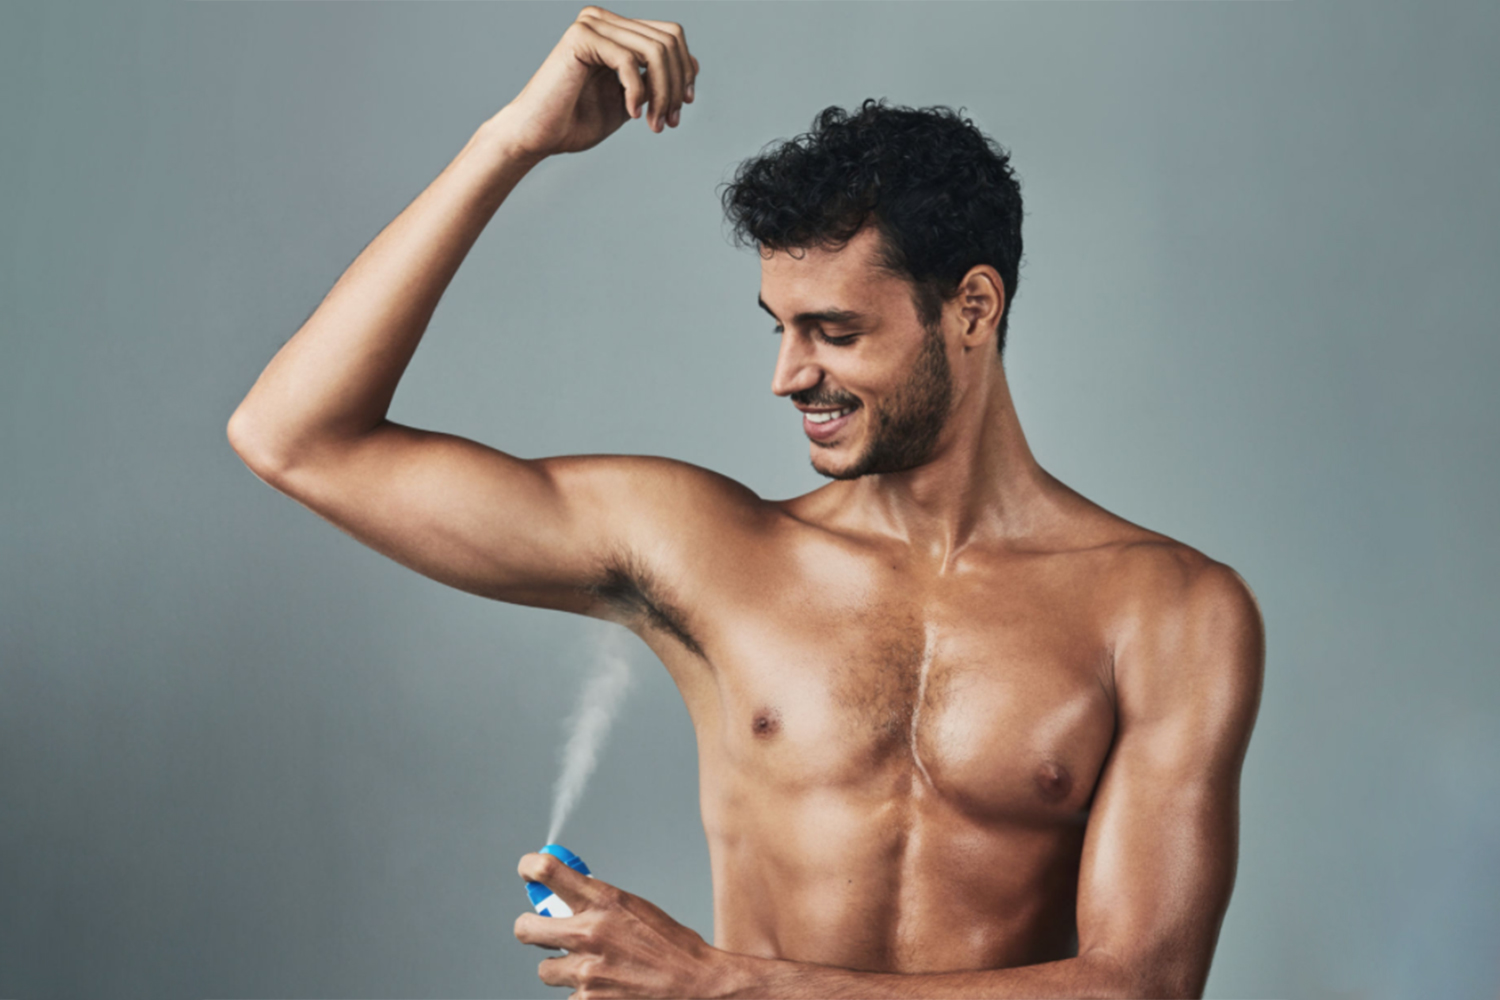 Publicité Exclusif Diplôme best body spray homosexuel Banc canal